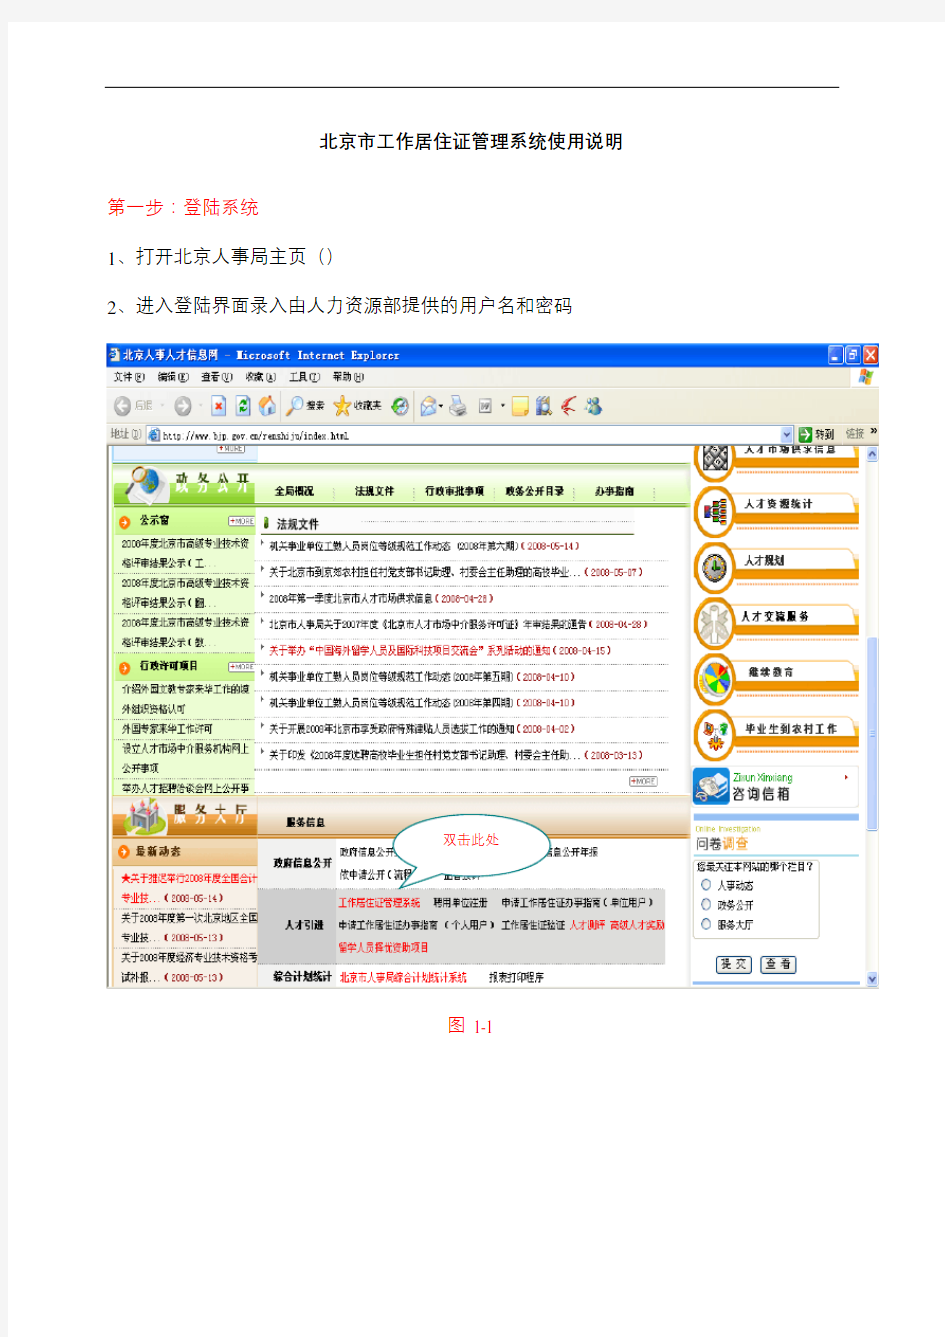 北京市工作居住证管理系统使用说明